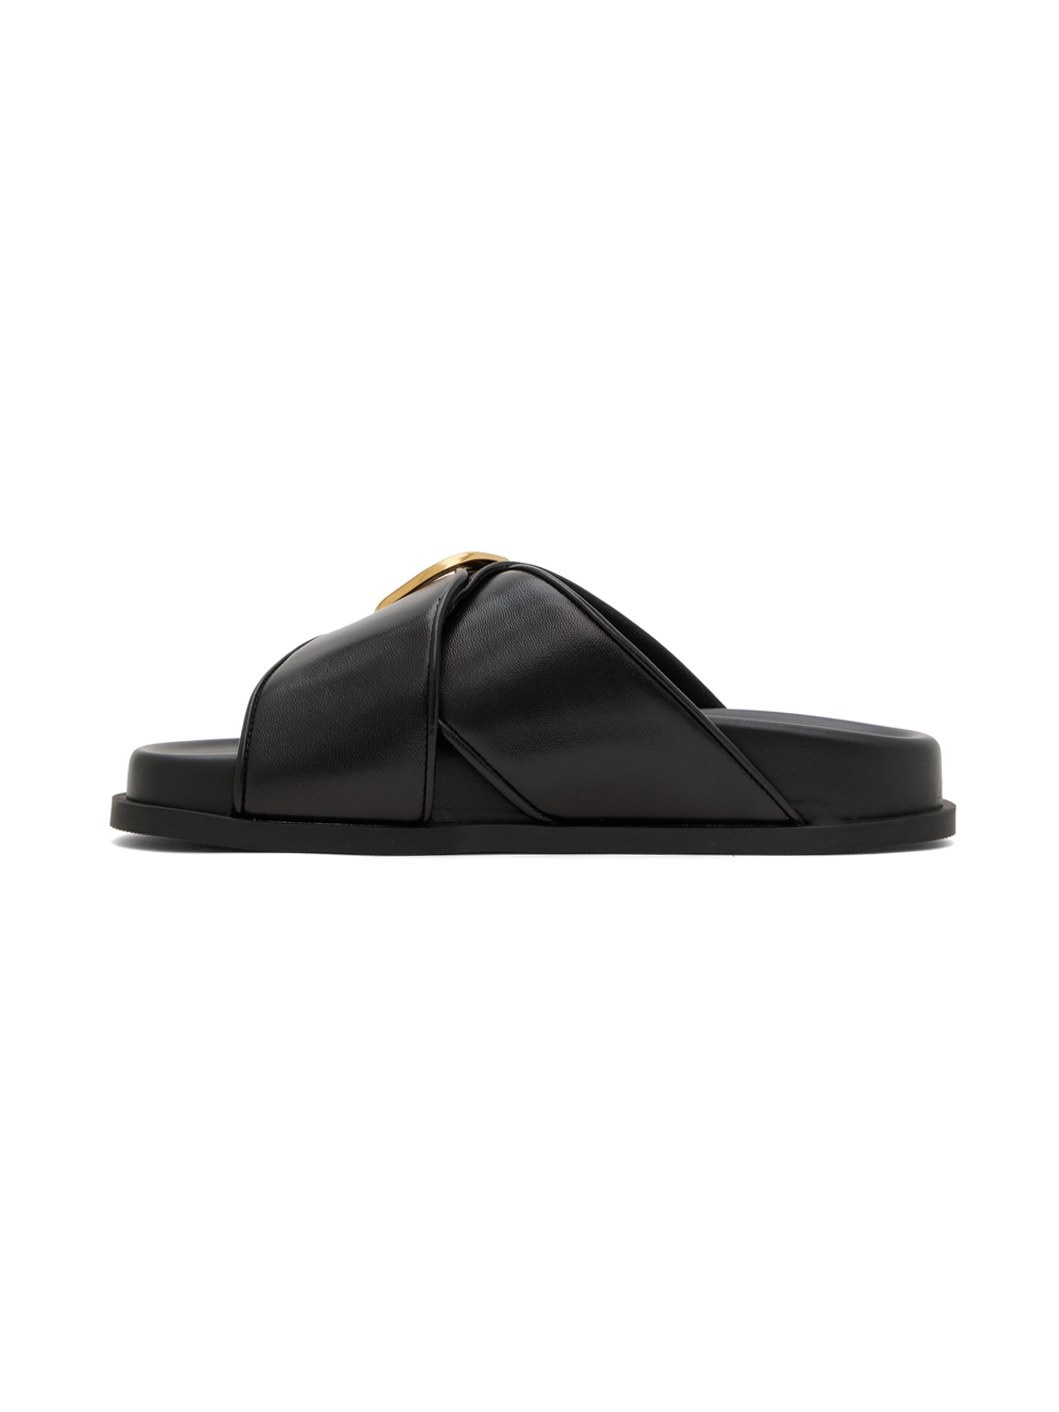 Black VLogo Sandals - 3